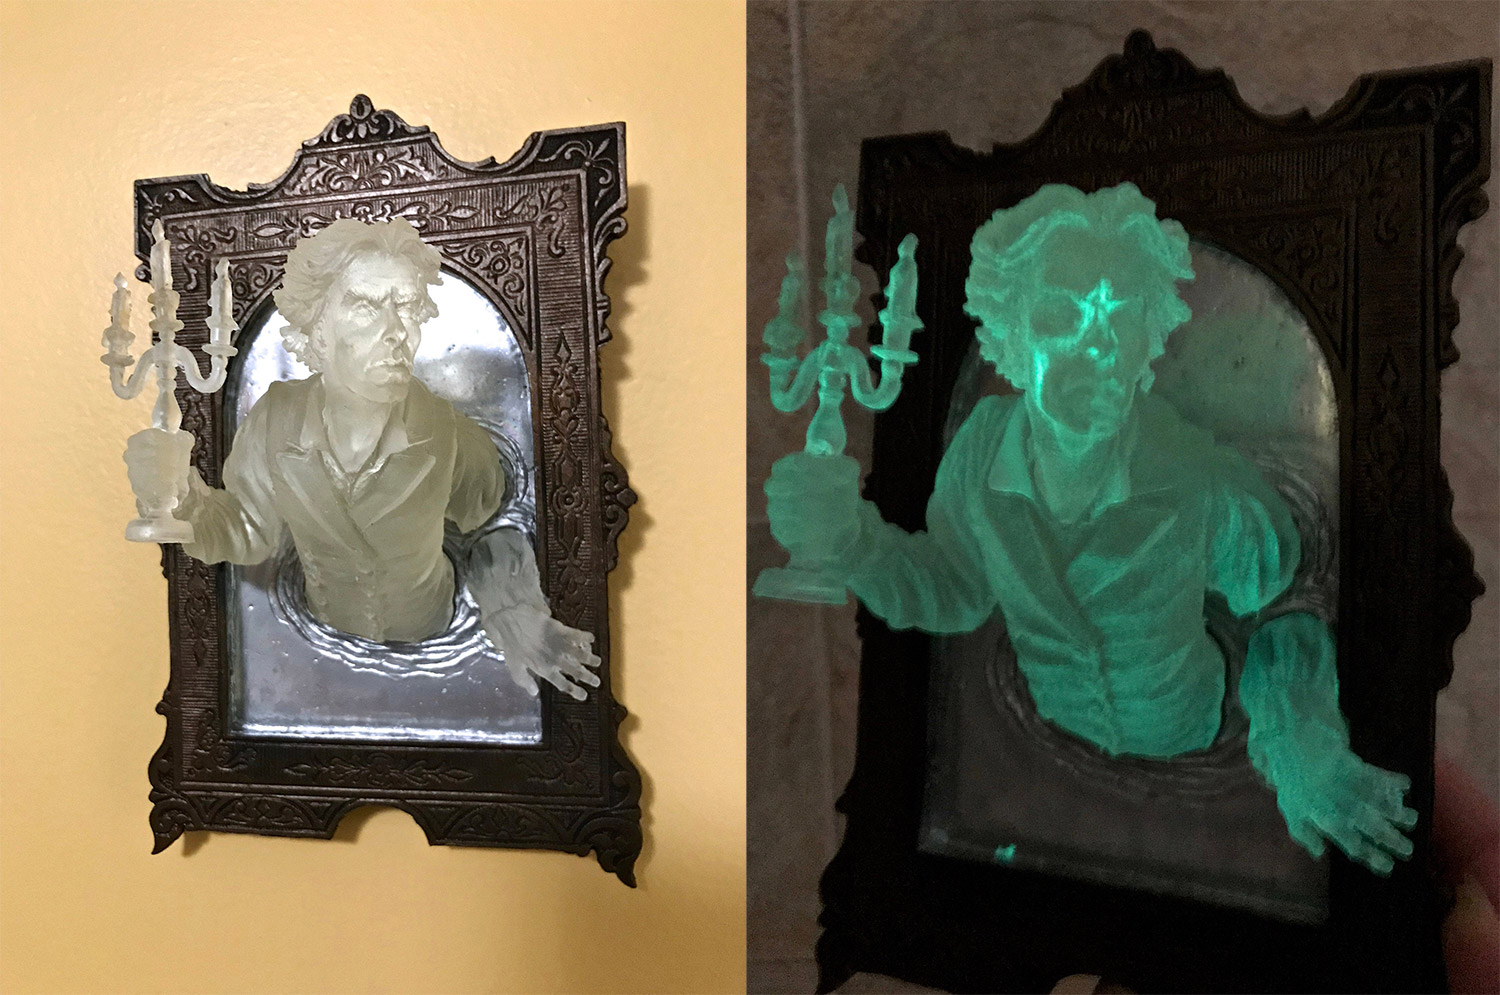 超令人毛骨悚然的幽灵在镜子墙板在黑暗中发光 - 3D 镜子幽灵人物雕塑